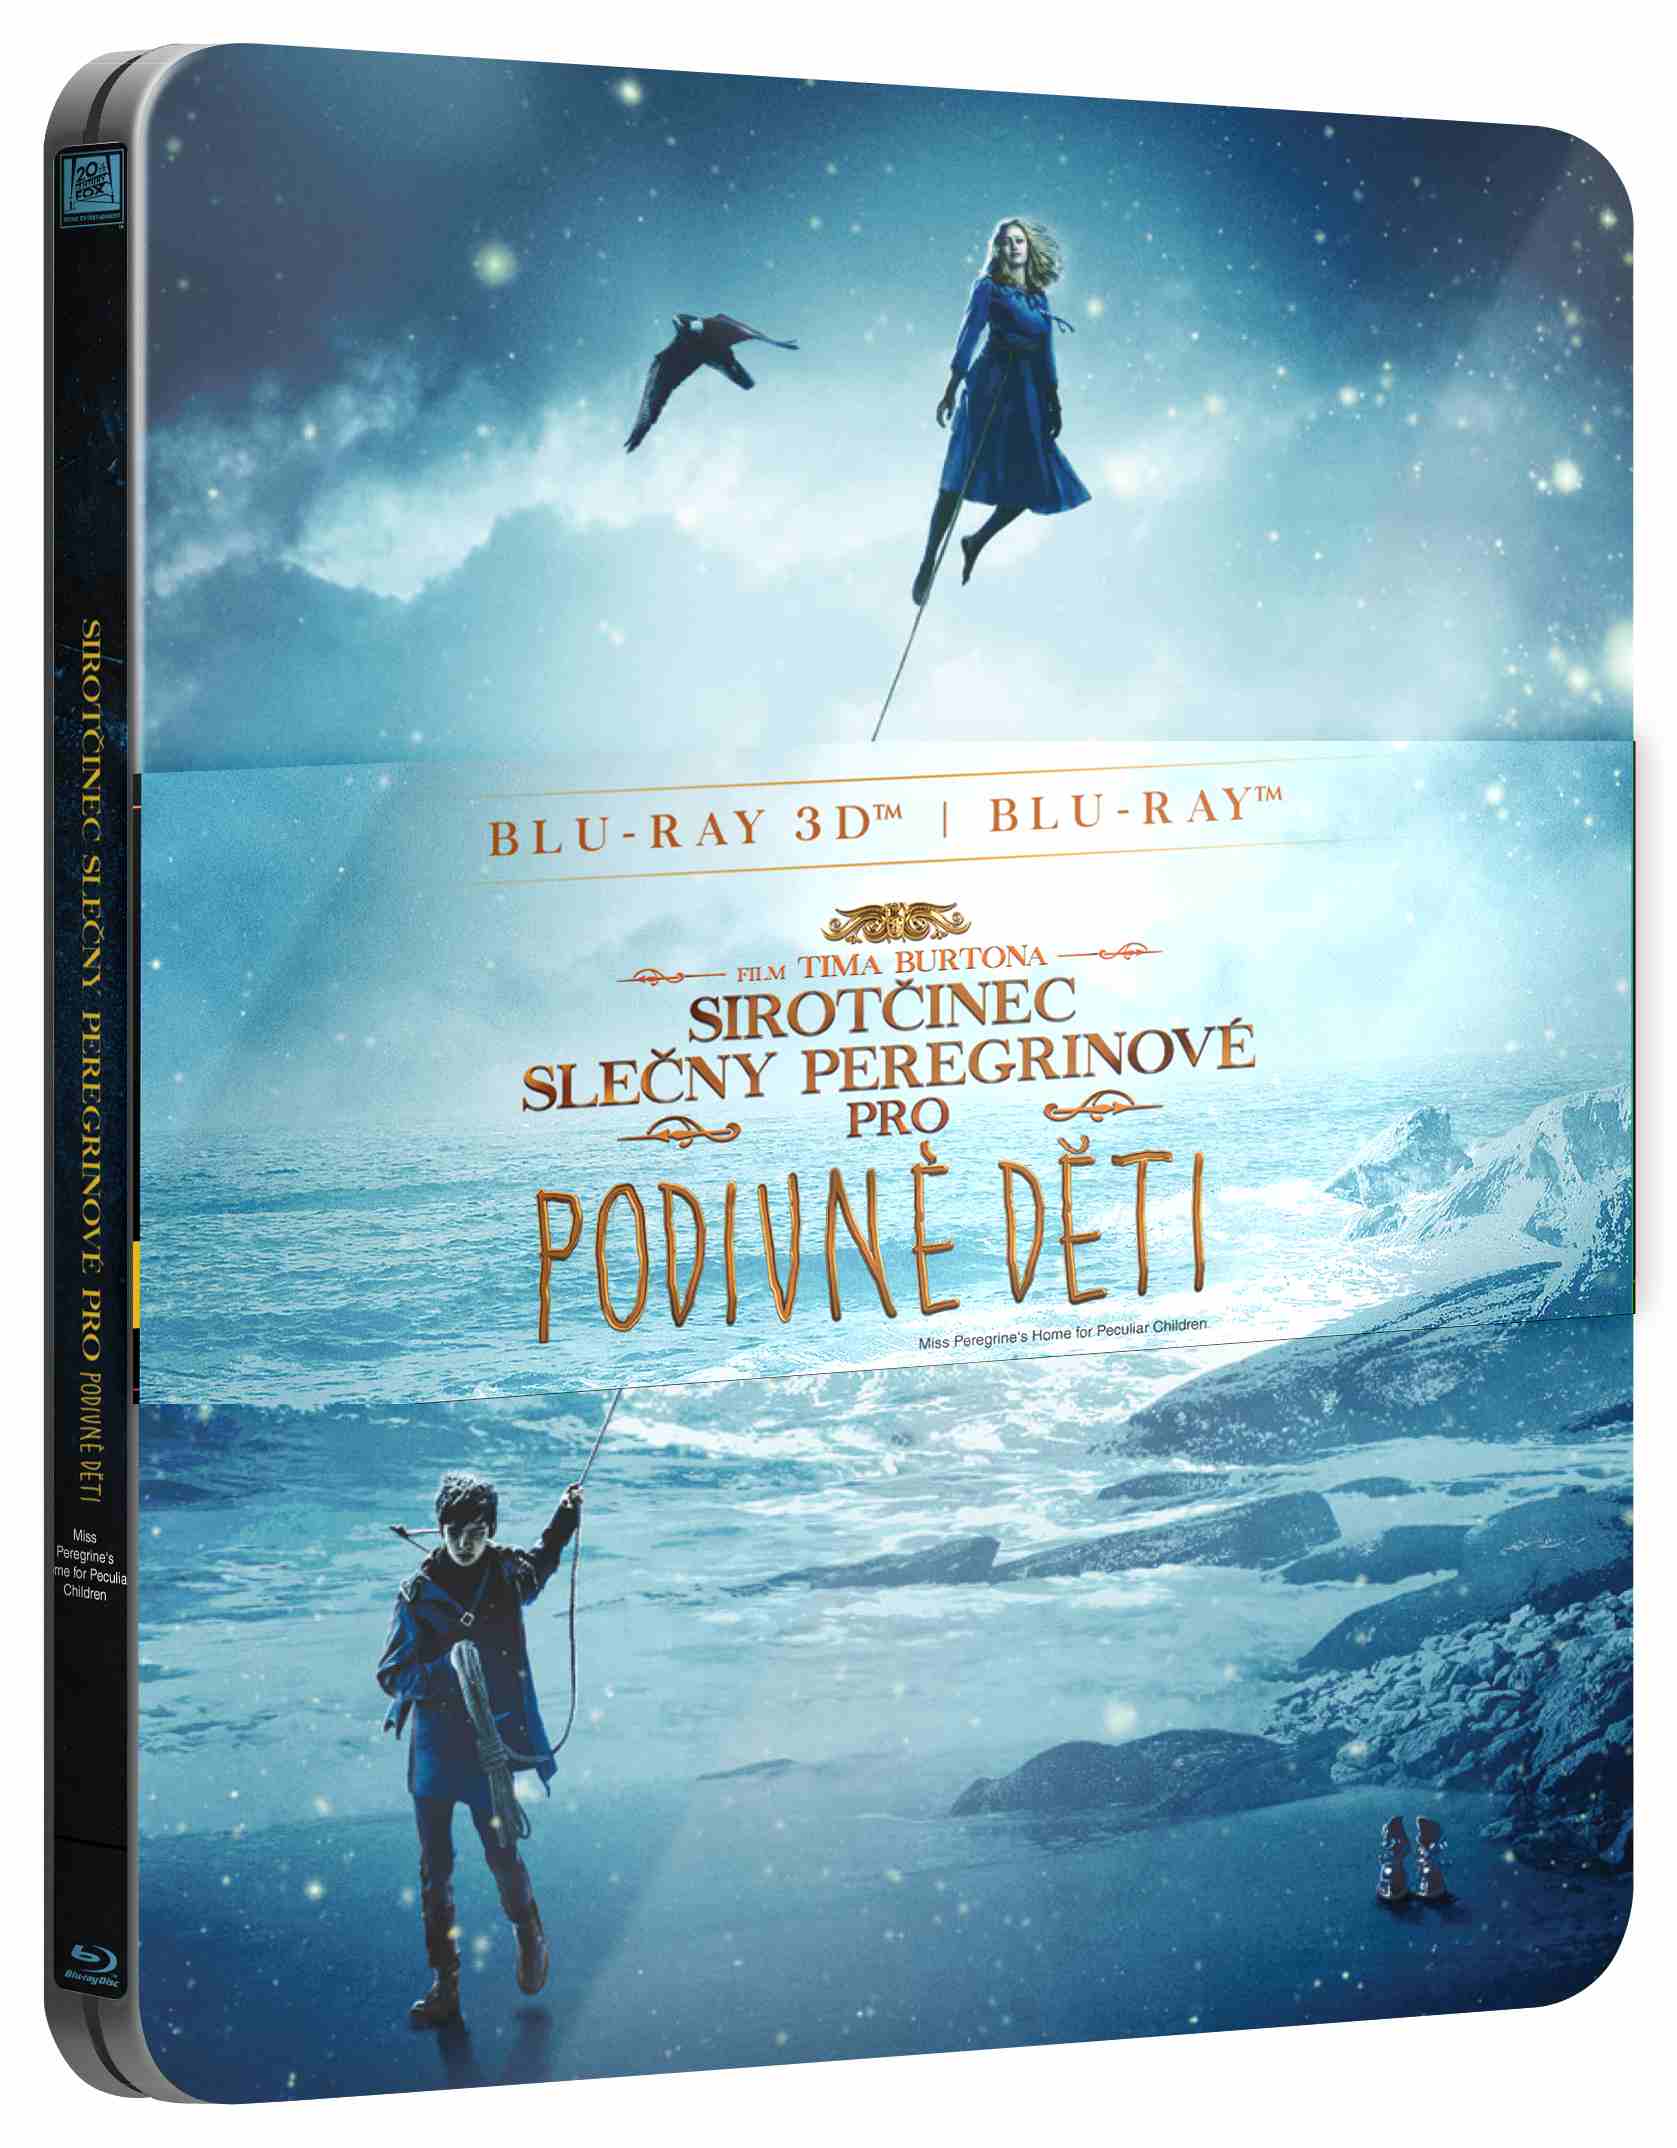 Sirotčinec slečny Peregrinové pro podivné děti - Blu-ray 3D + 2D Steelbook